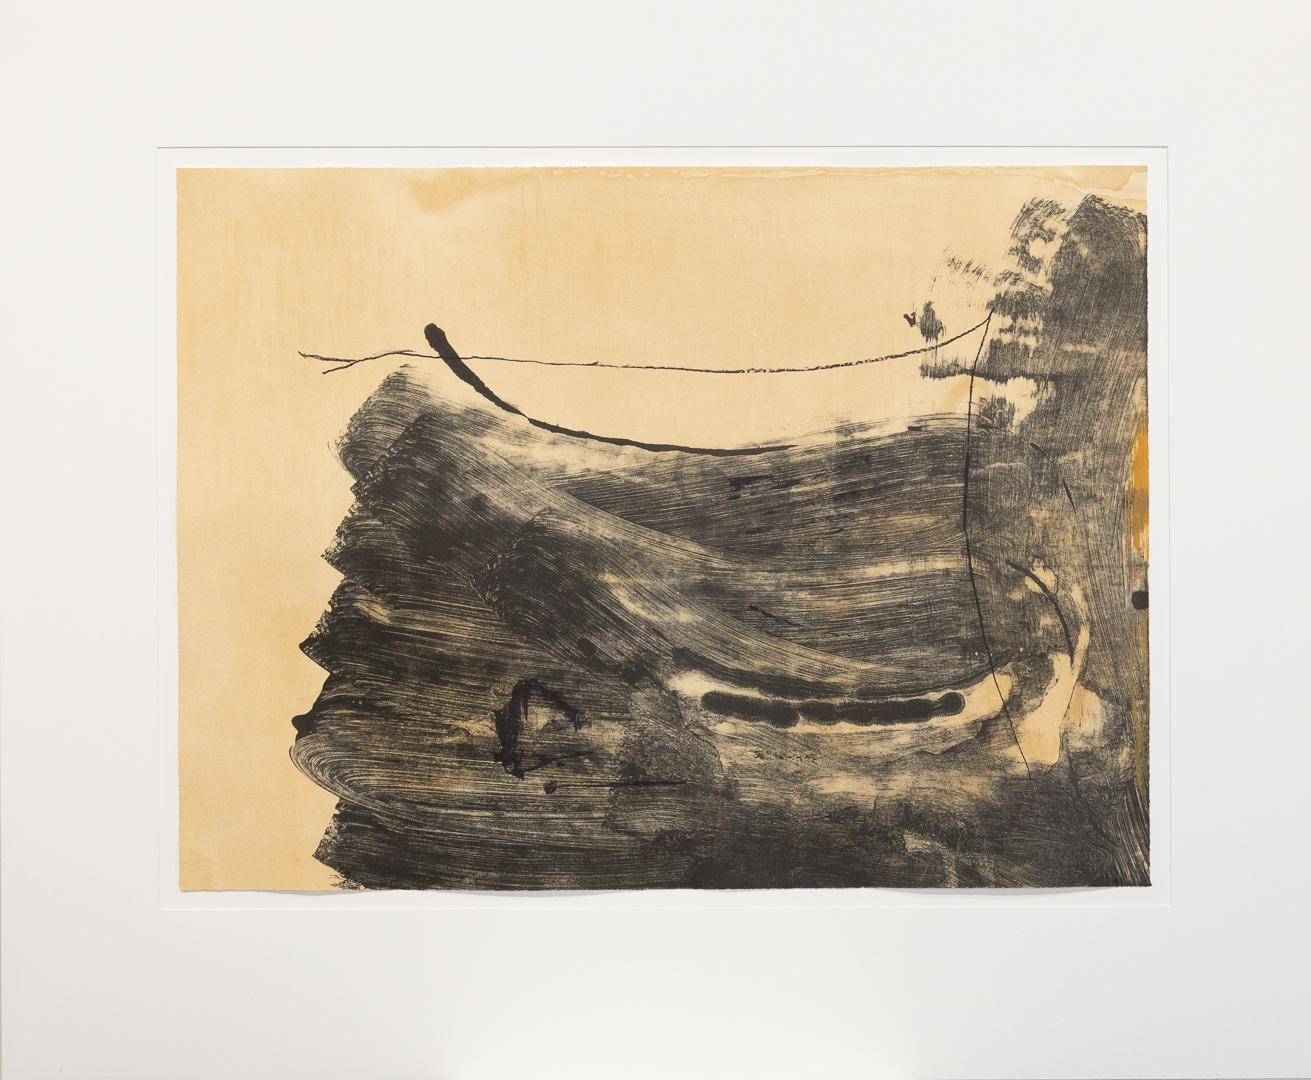 Helen Frankenthaler Abstract Print - "Ochre Dust" Aquatint, Lithograph, Black, Ochre, Pencil Signed 